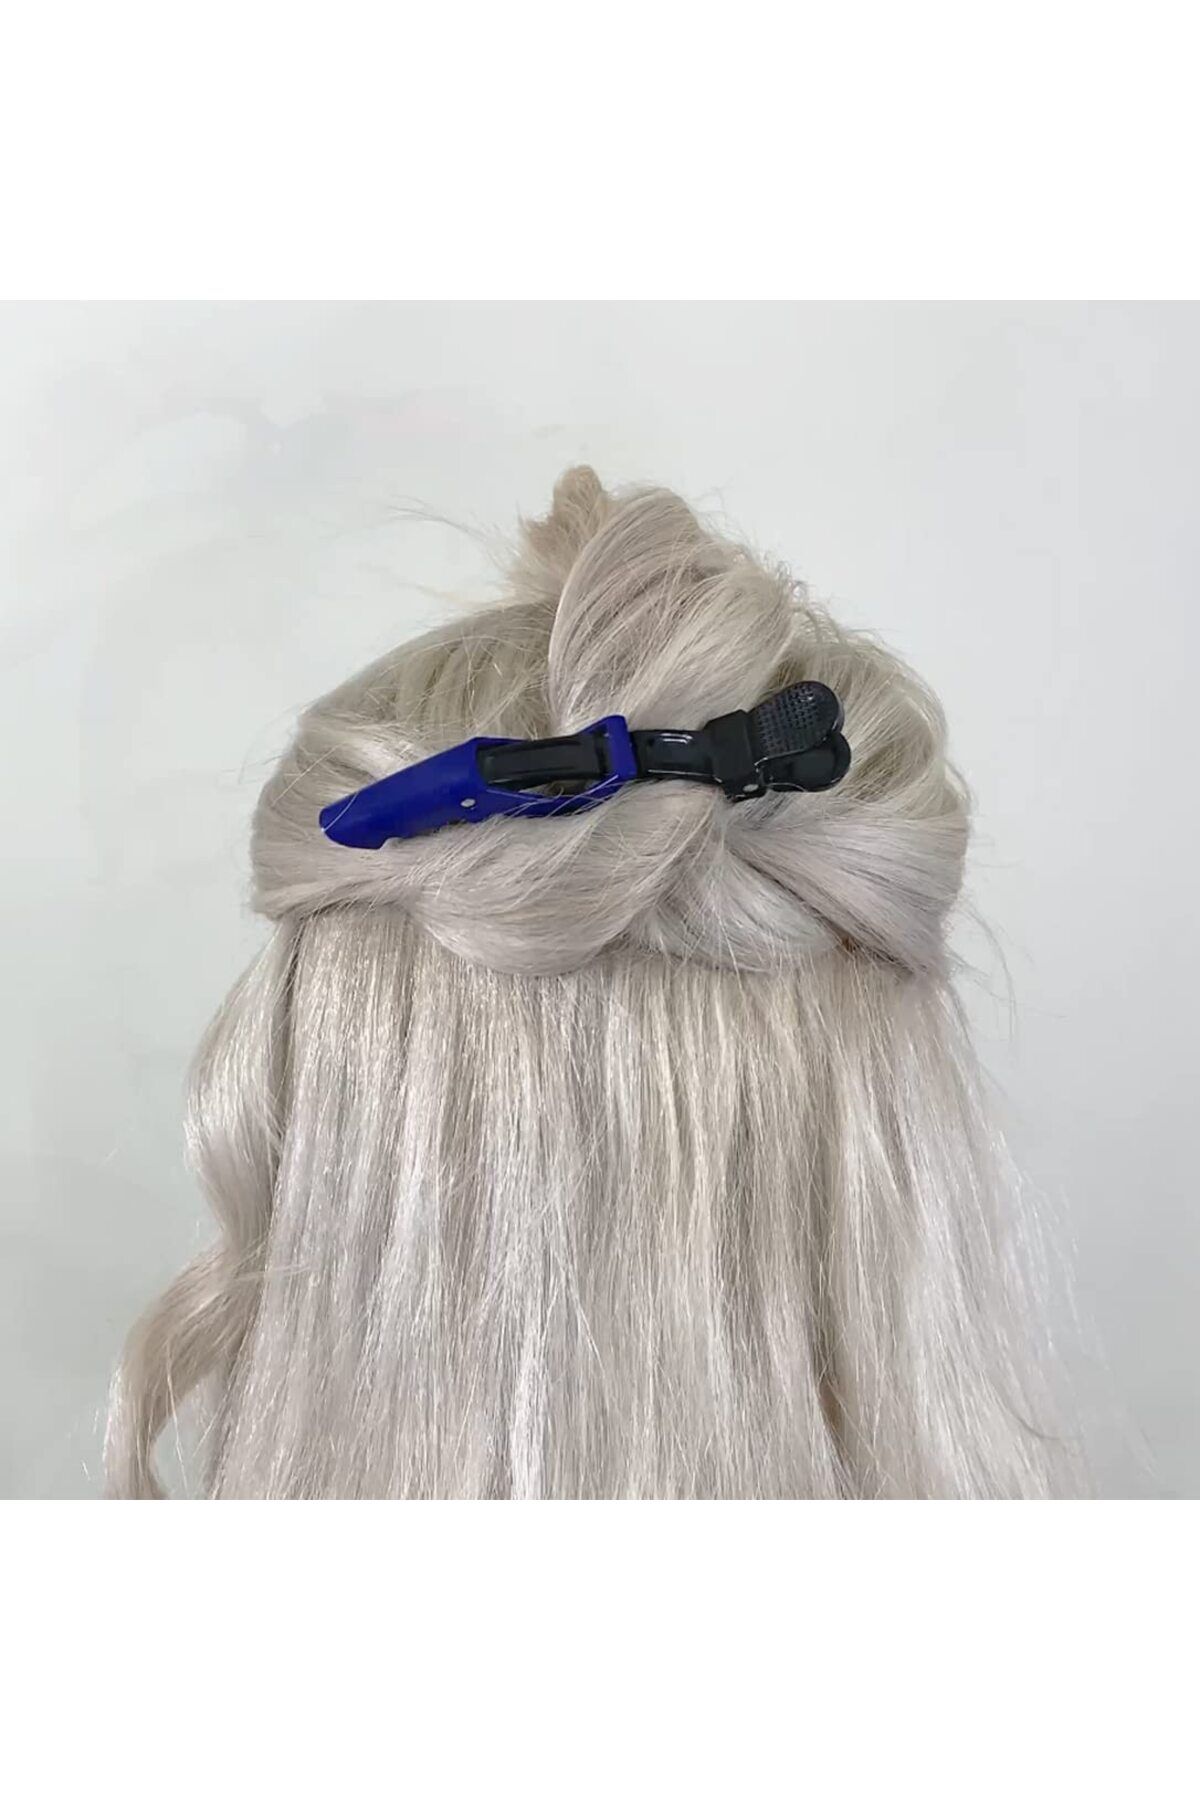 Cinderella 2'li Profesyonel Timsah Model Saç Pensi Mavi Renk - Dragon Kuaför Tokası Makyaj Fön Dalga Saç Tutucu